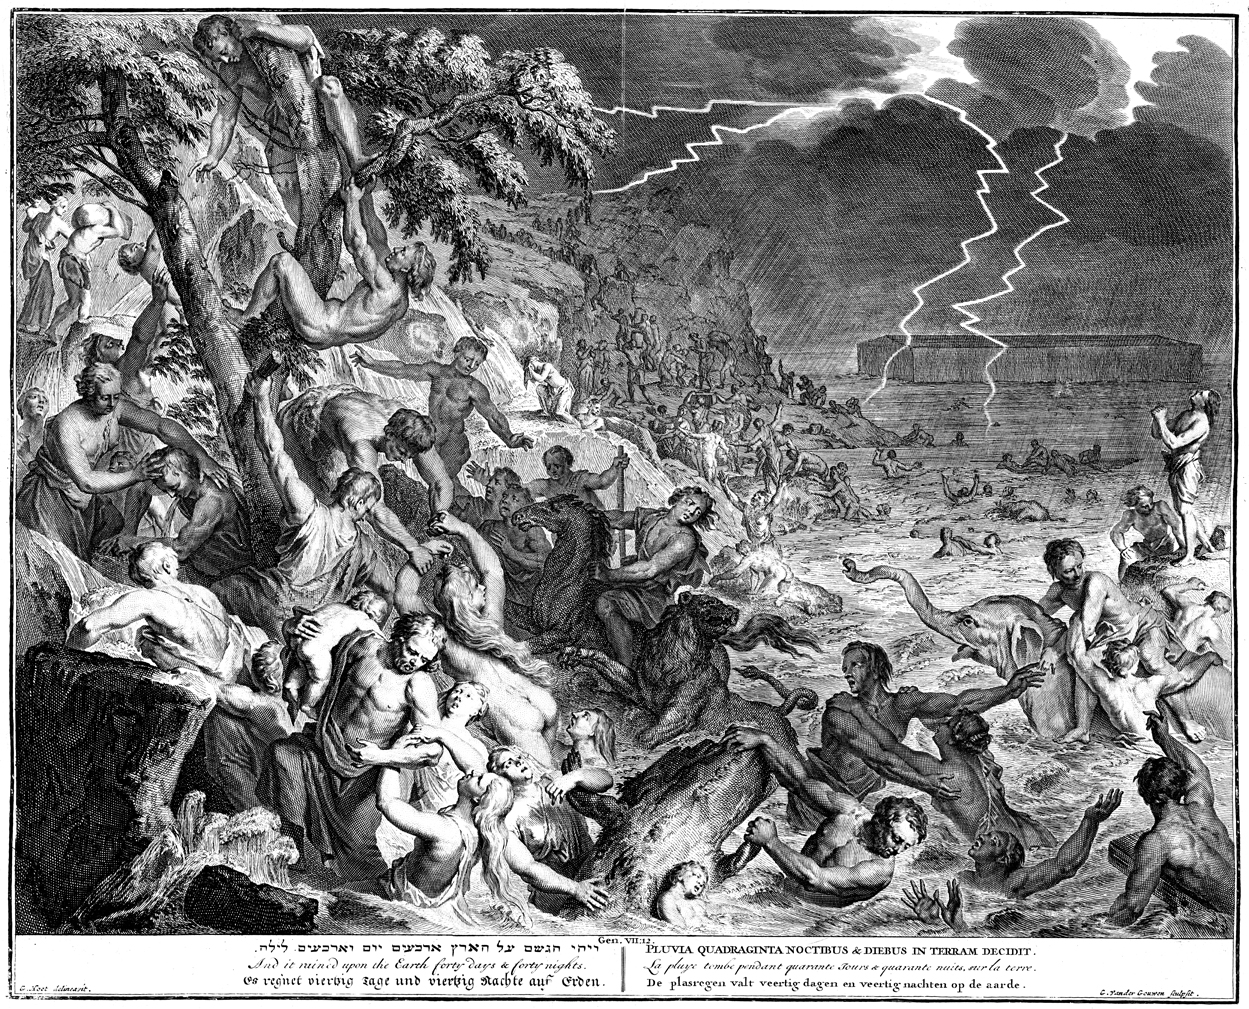 Noah's Ark and the Flood